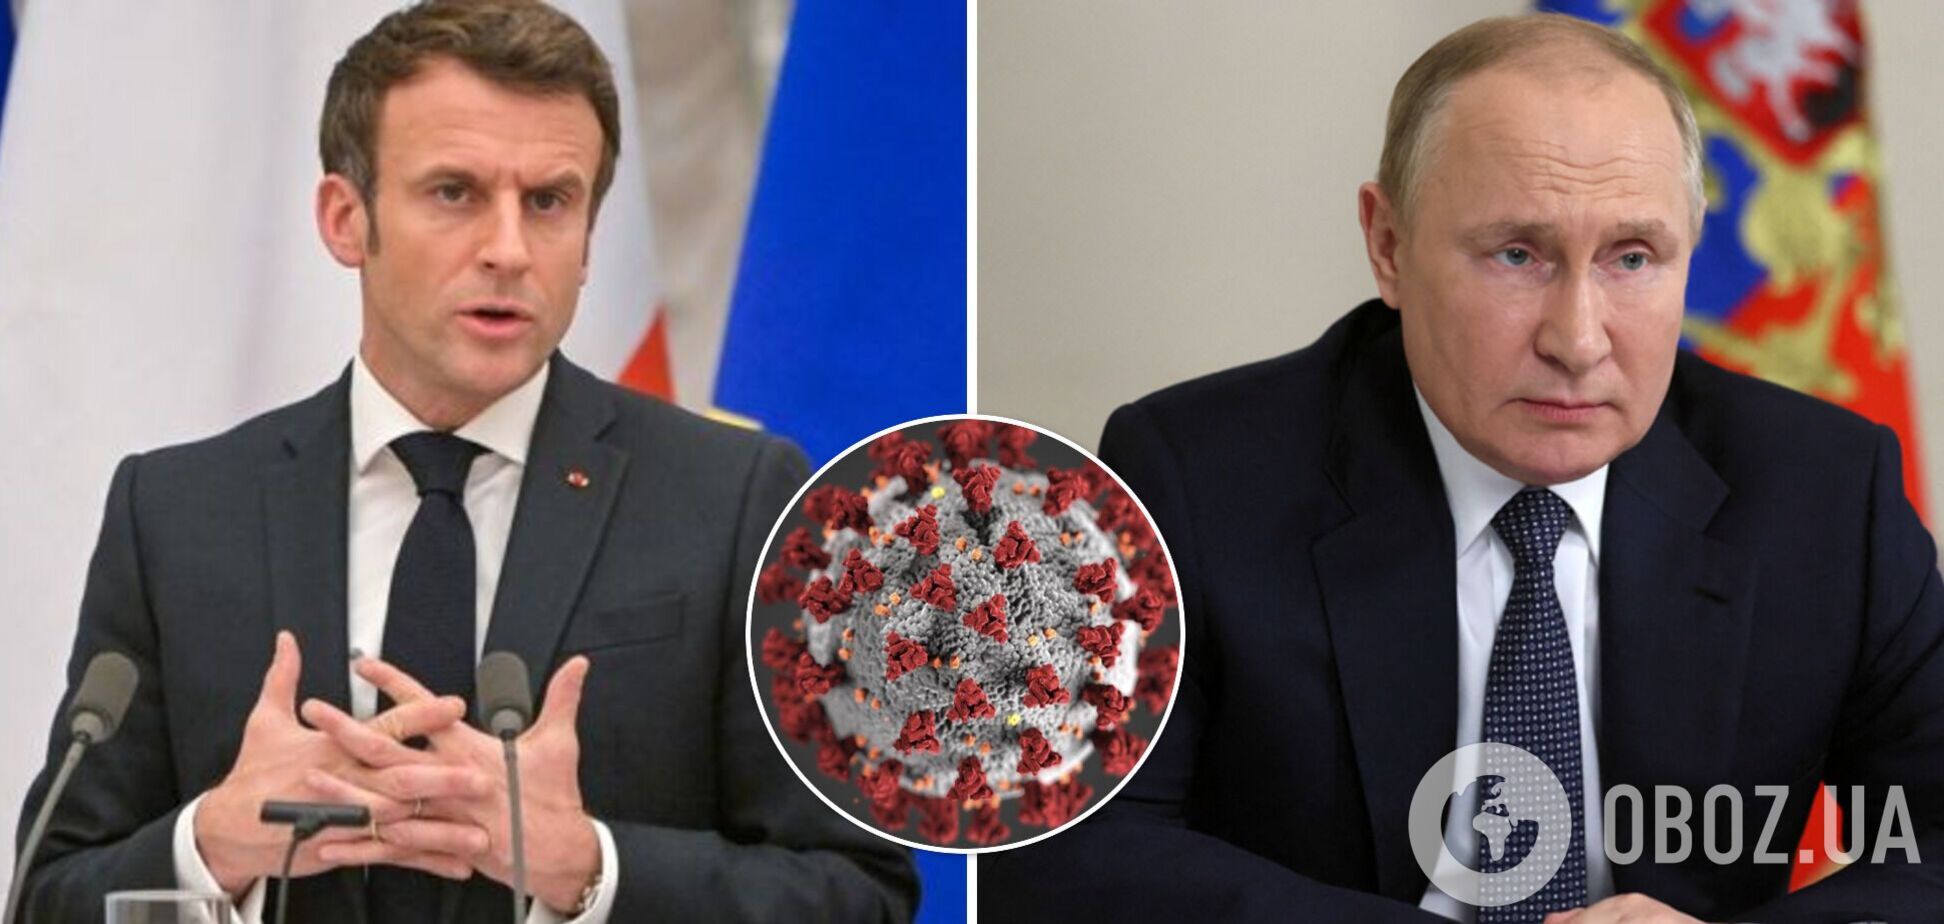 Макрон предположил, что причины действий Путина могут крыться в последствиях коронавируса.